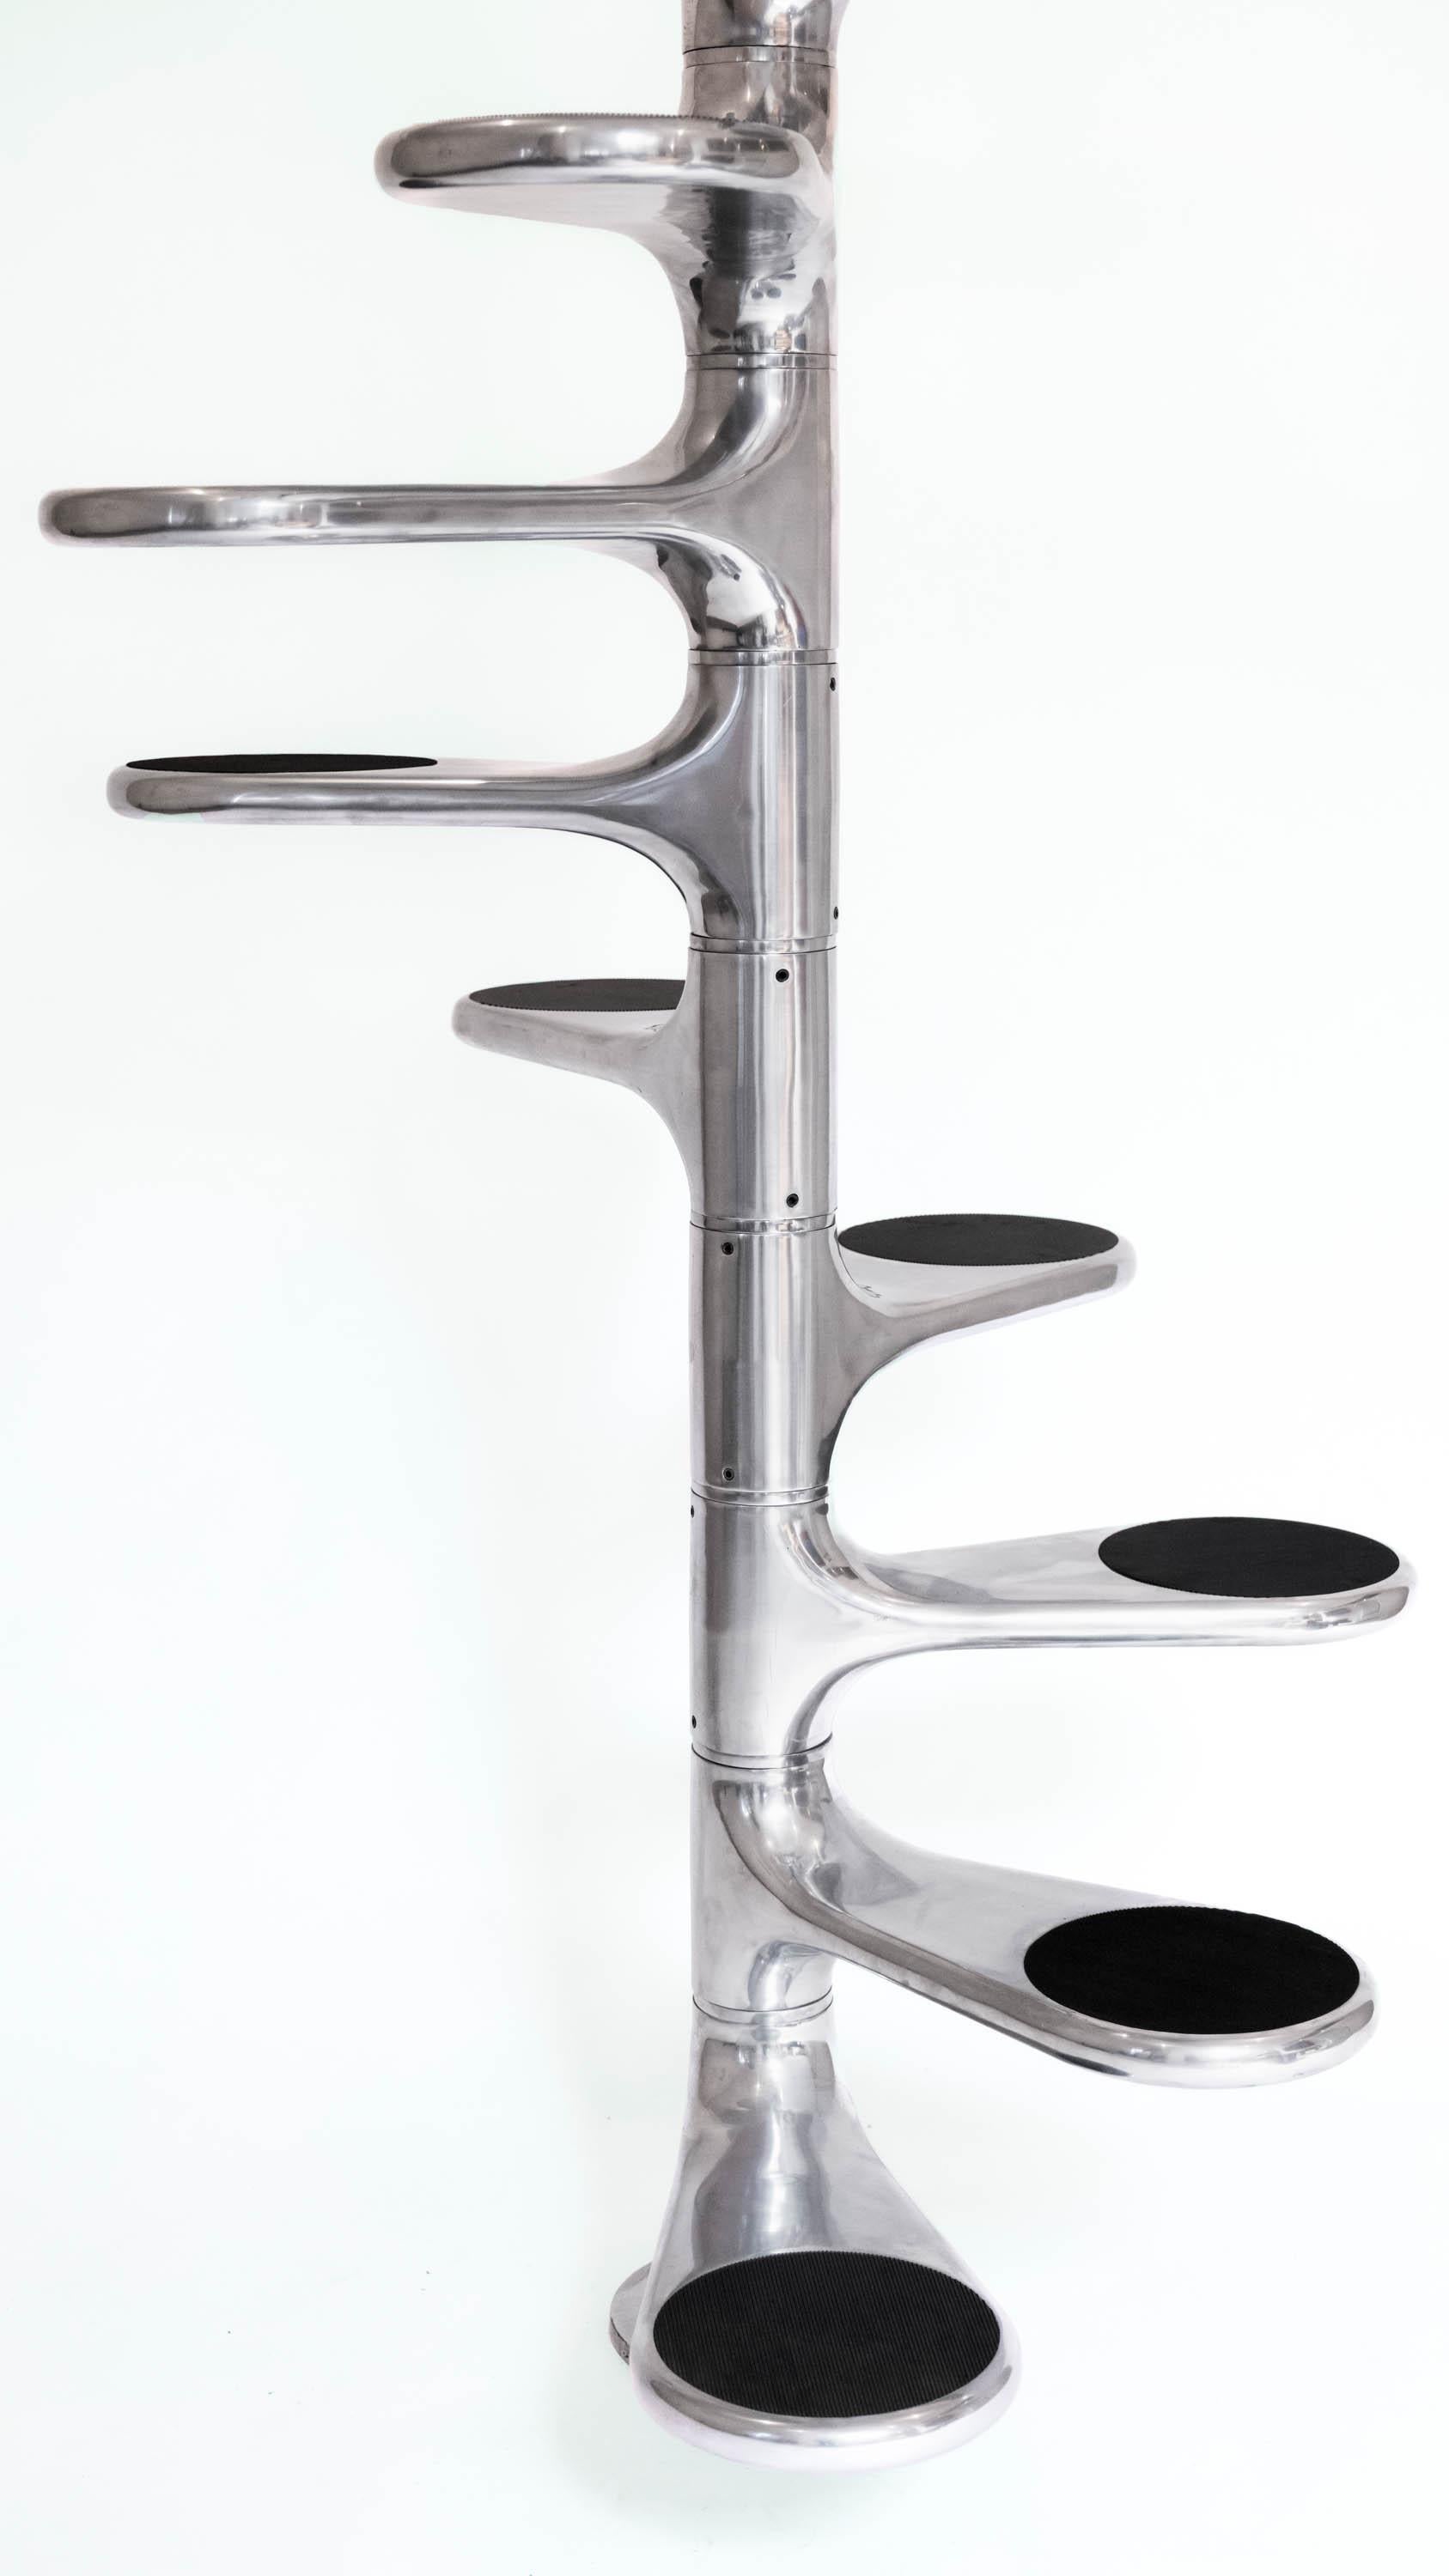 WENDELTREPPE
ROGER TALLON

Wendeltreppe, auch bekannt als Escalier M400, entworfen von dem französischen Industriedesigner Roger Tallon, hergestellt von Sentou. Insgesamt 13 Stufen aus gegossenem und poliertem Aluminium mit schwarzem rutschfestem